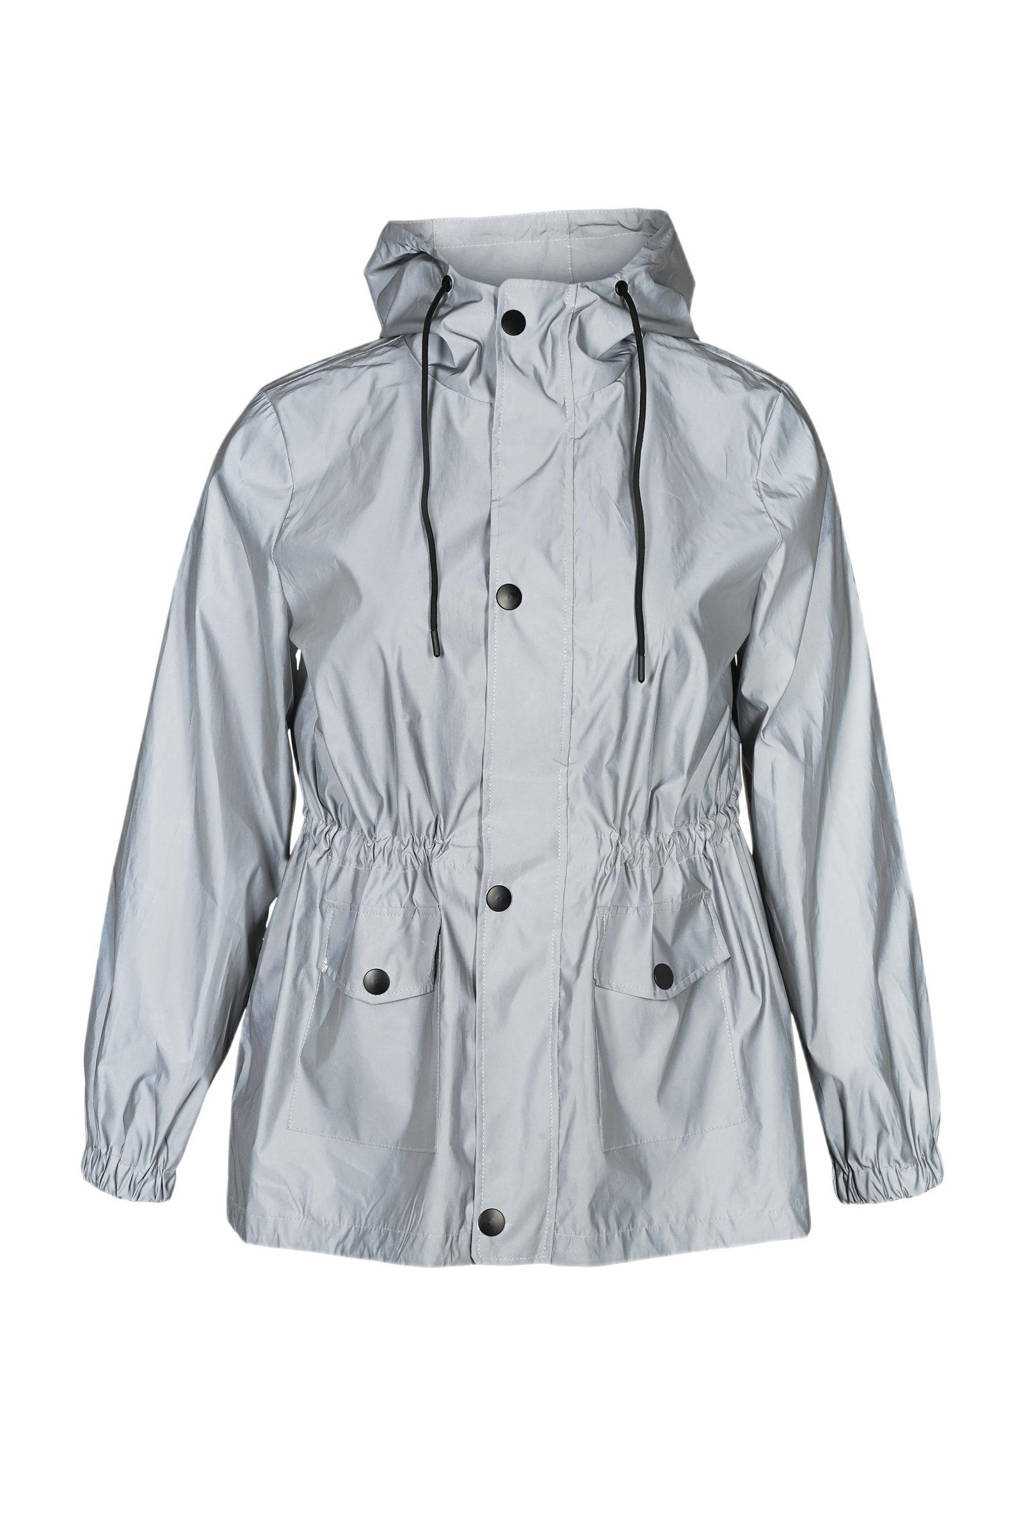 Zilverkleurige dames ACTIVE By Zizzi Plus Size reflecterende jas van polyester met lange mouwen, capuchon en ritssluiting